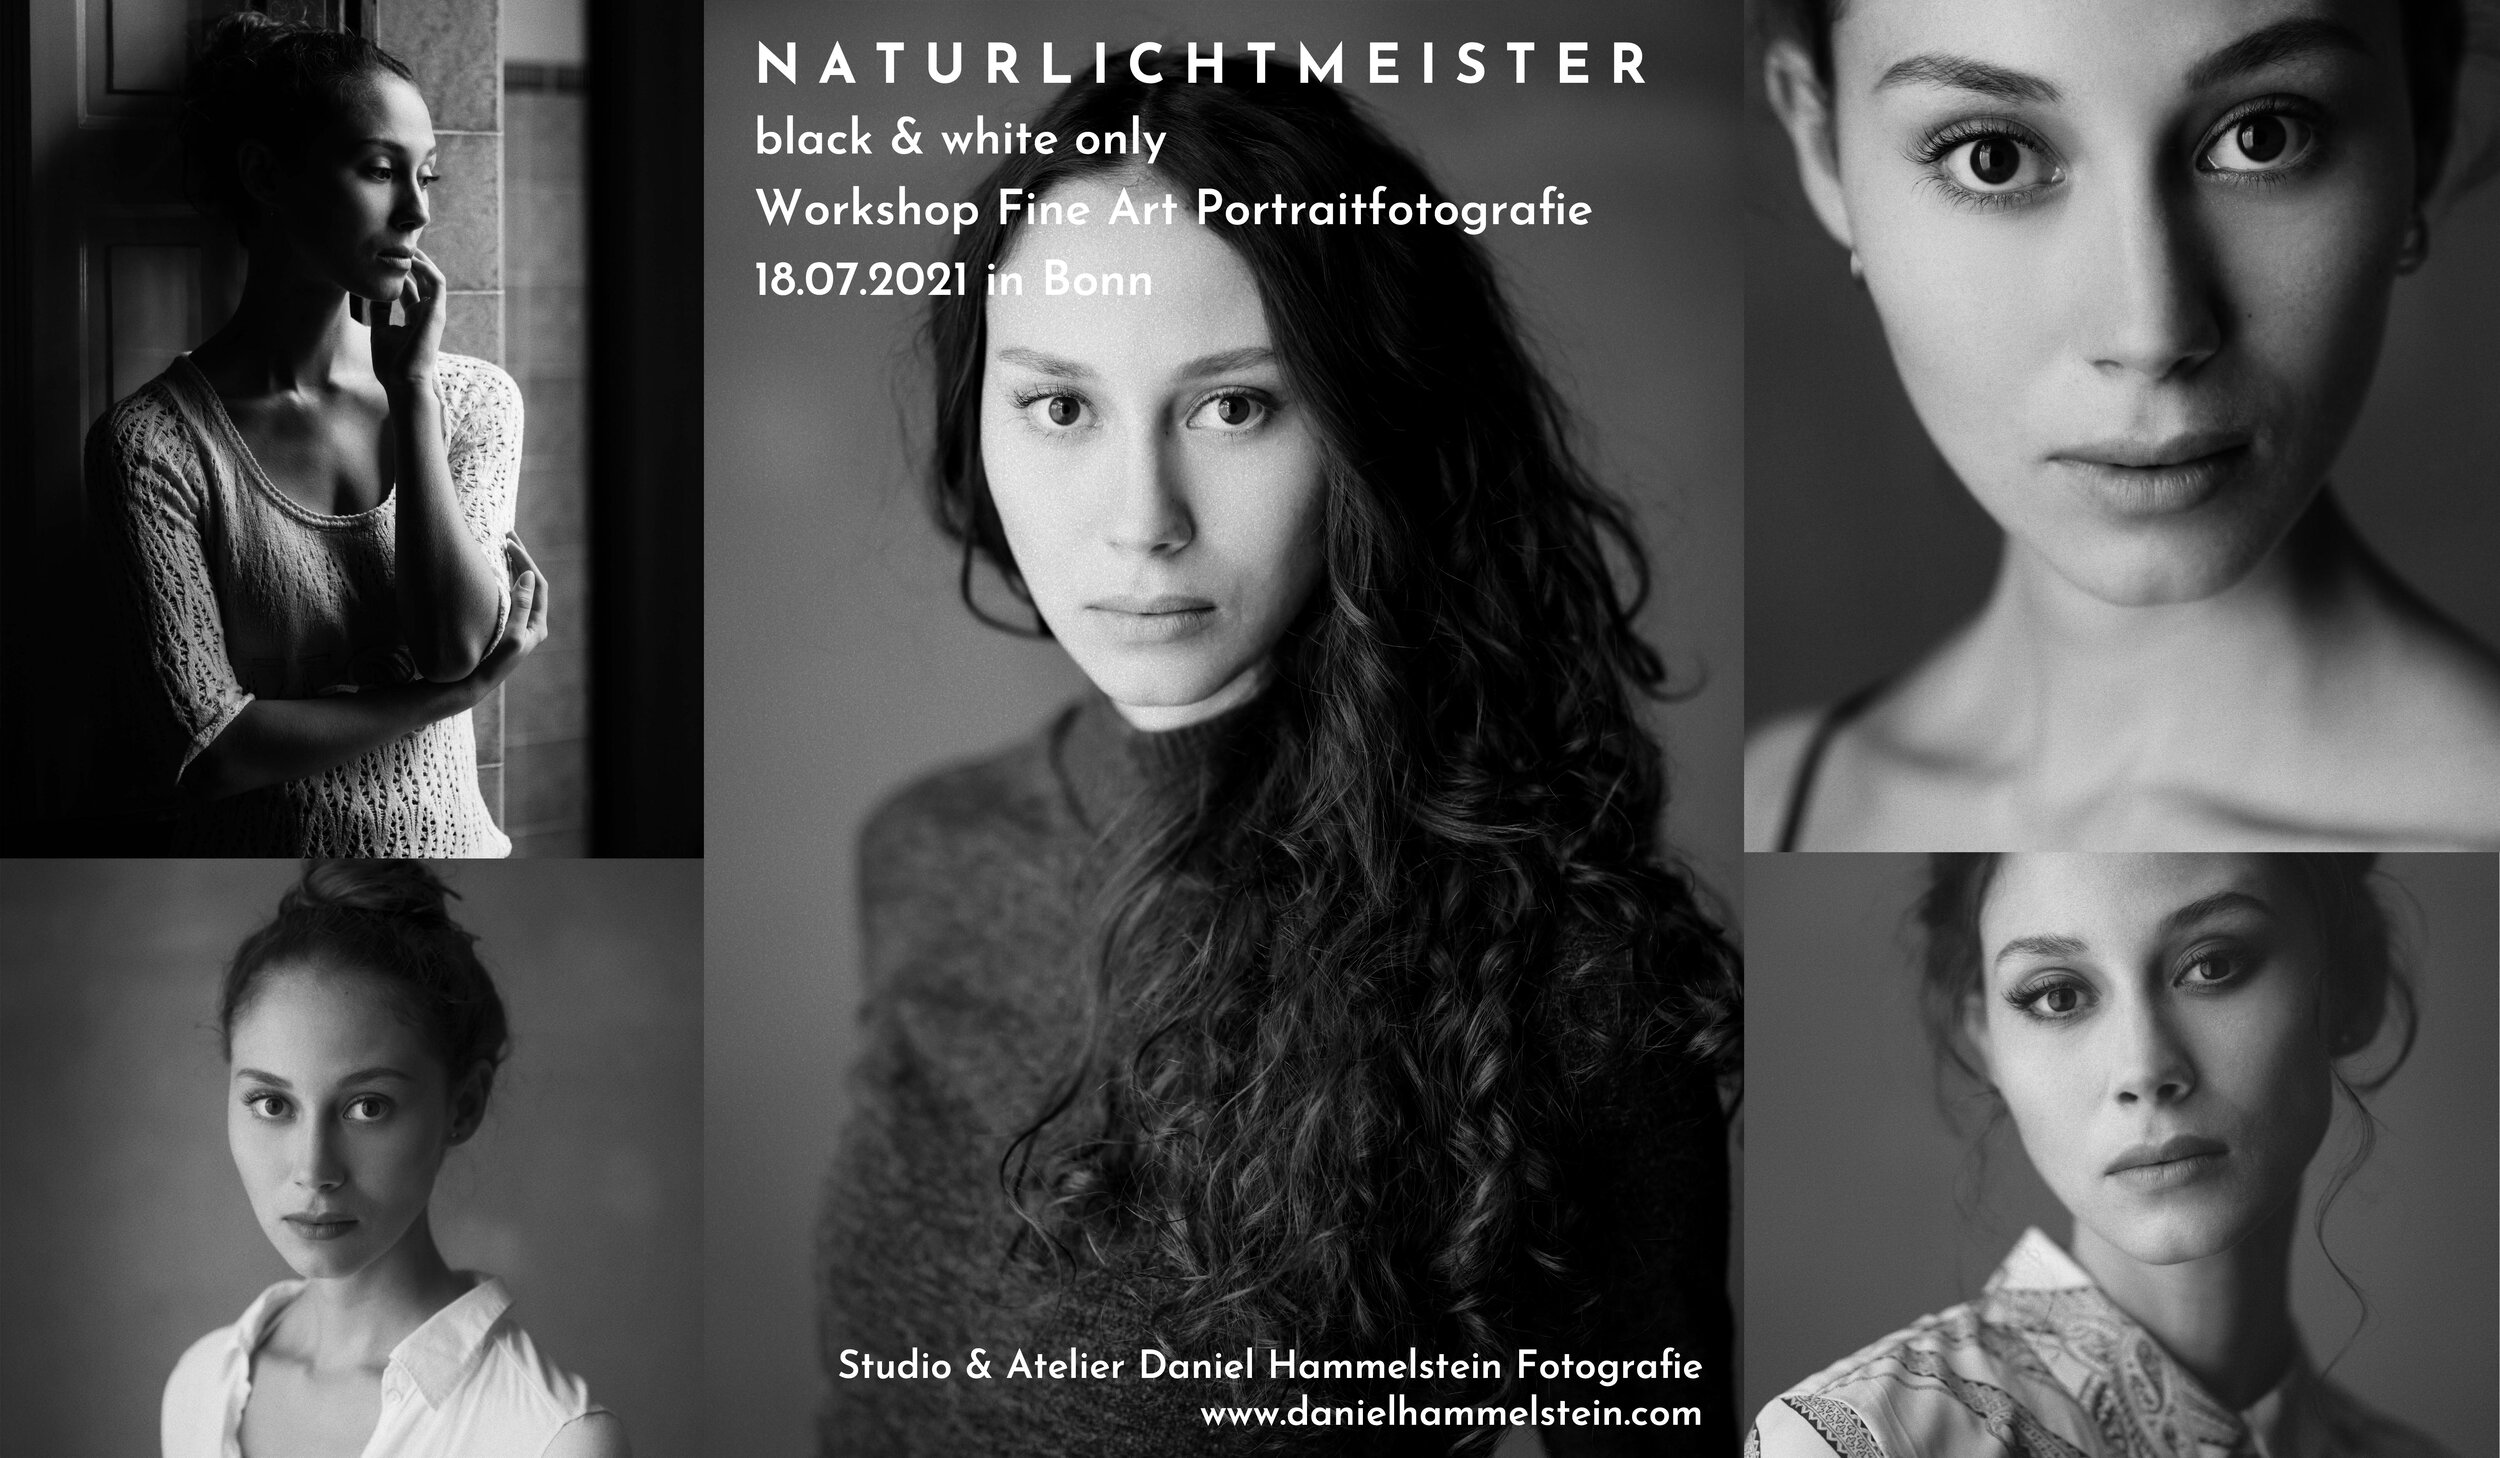 Naturlichtmeister Workshop Juli 2021 Daniel Hammelstein Portrait Workshop Portraitfotografie Schwarzweissfotografie Fotoworkshop Fotokurs Bonn Köln Düsseldorf NRW.jpg